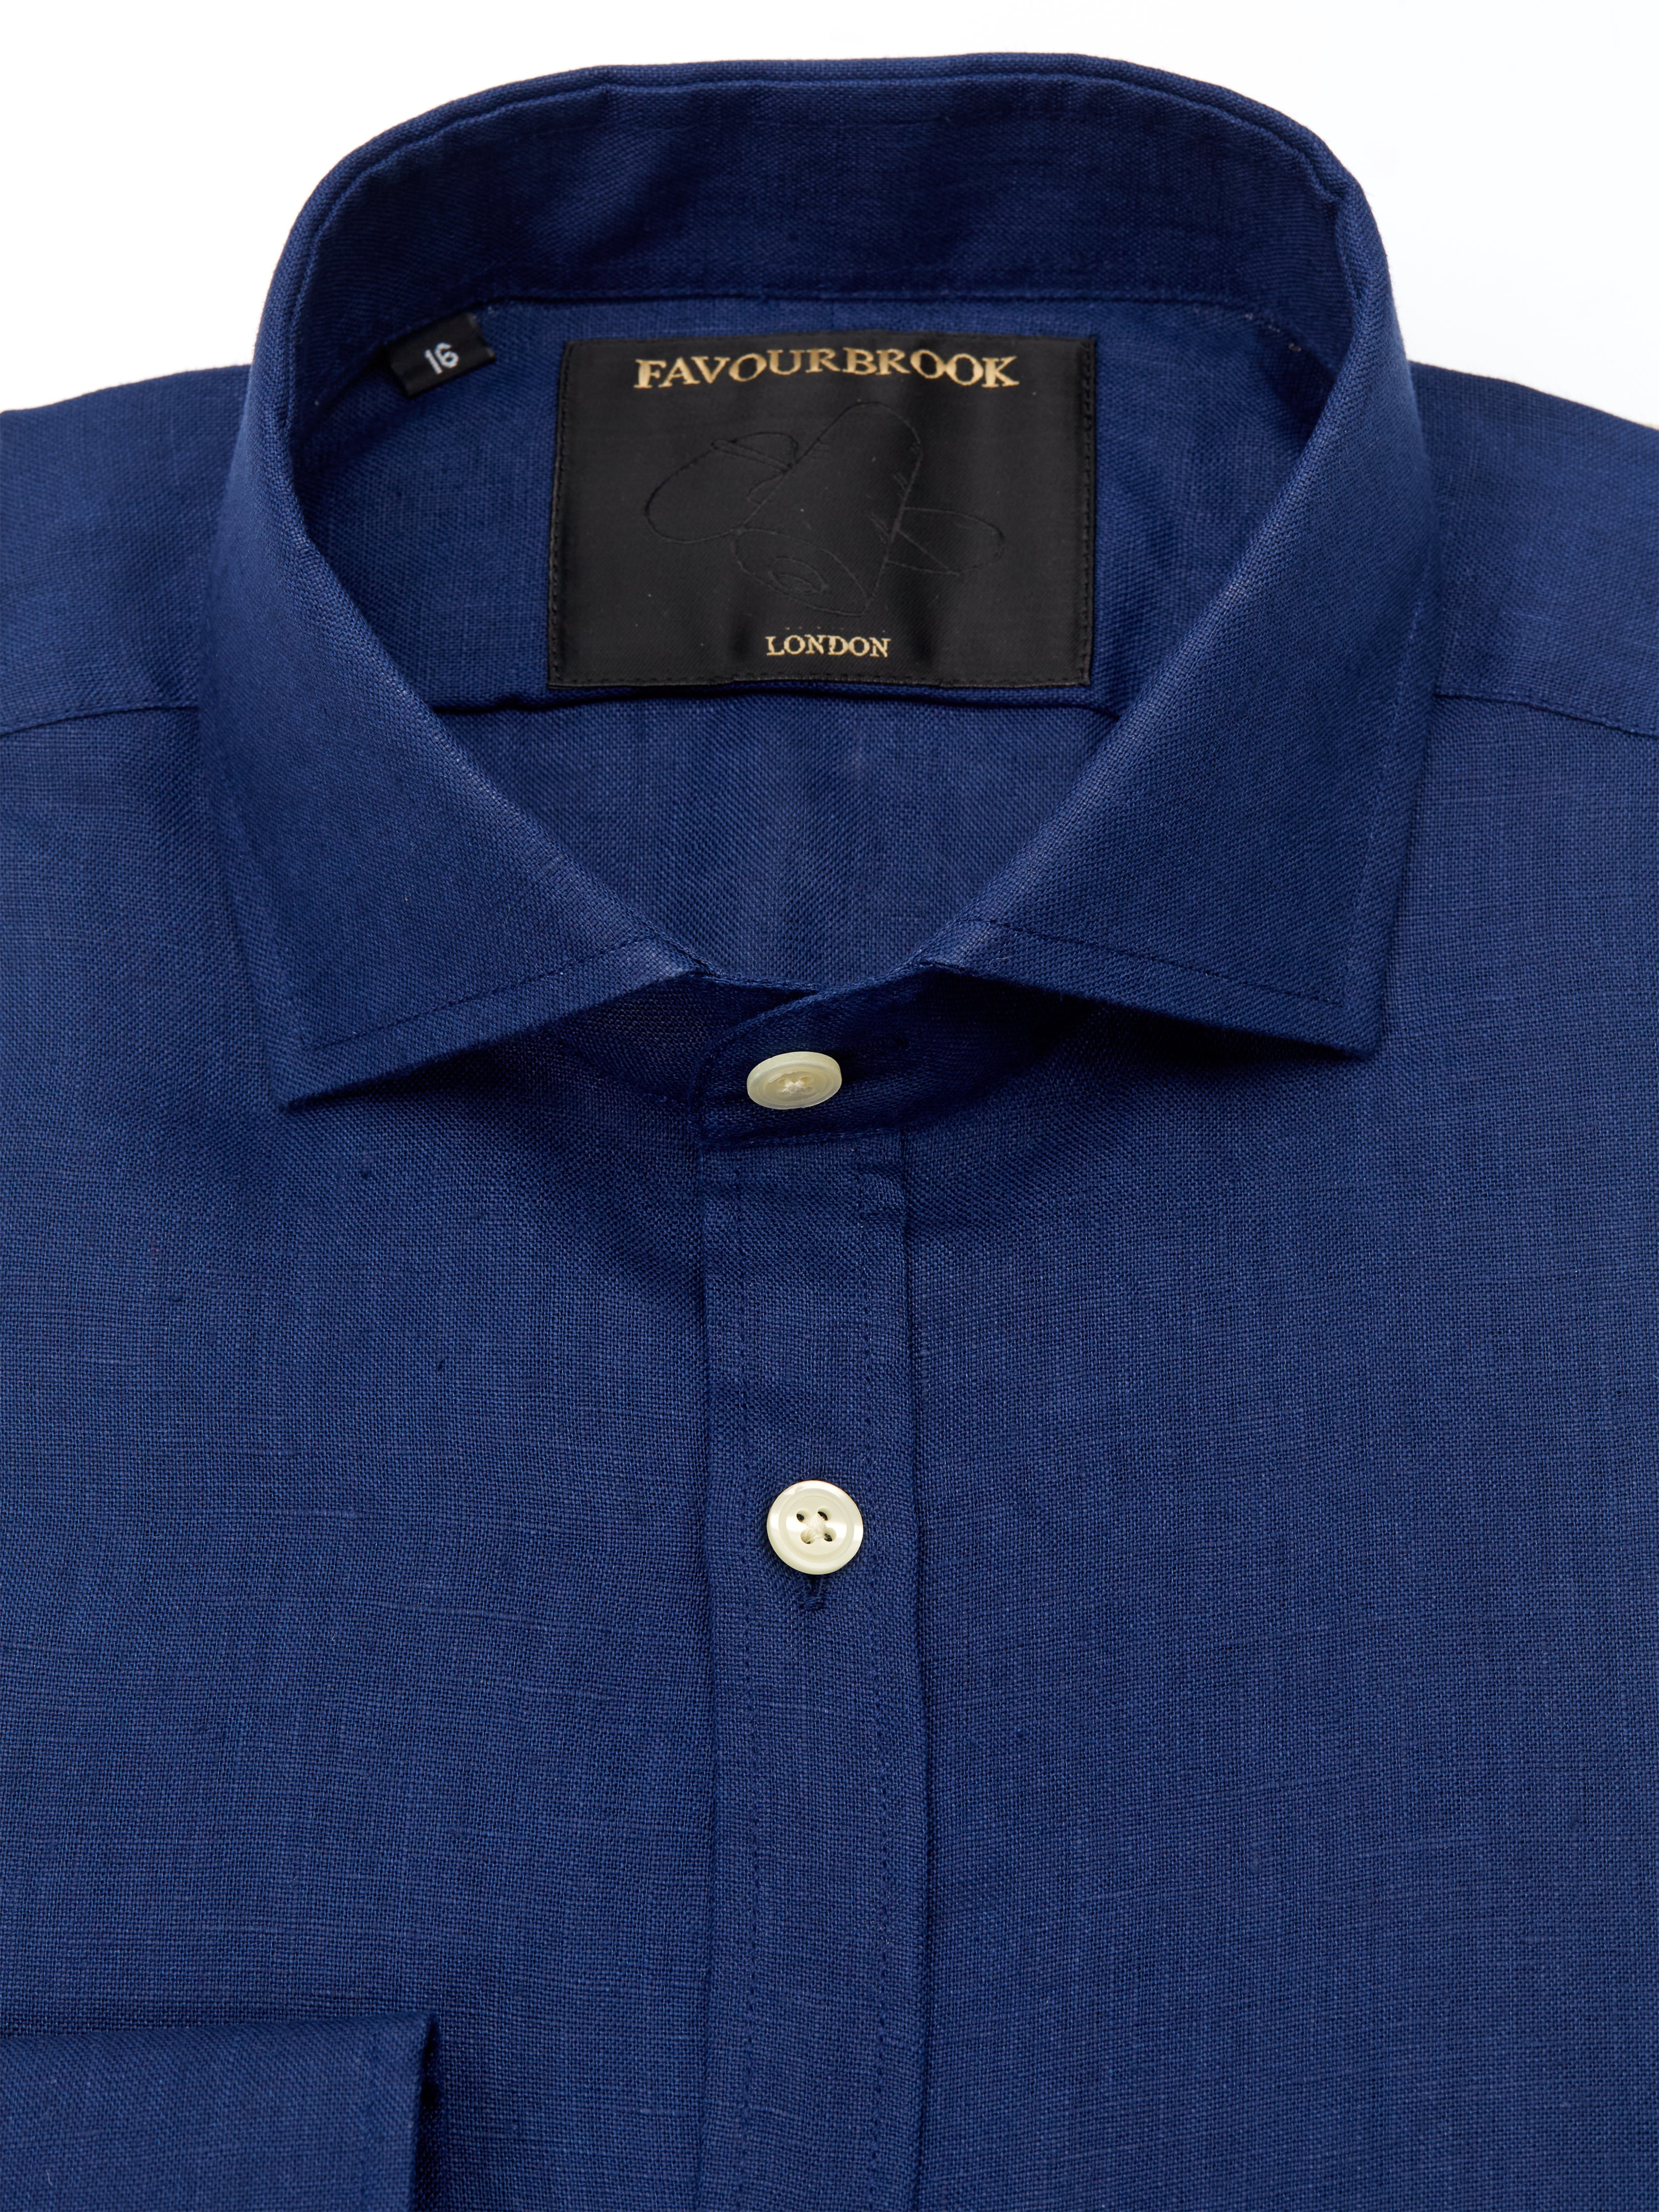 Navy Bridford Linen Cutaway Collar Shirt